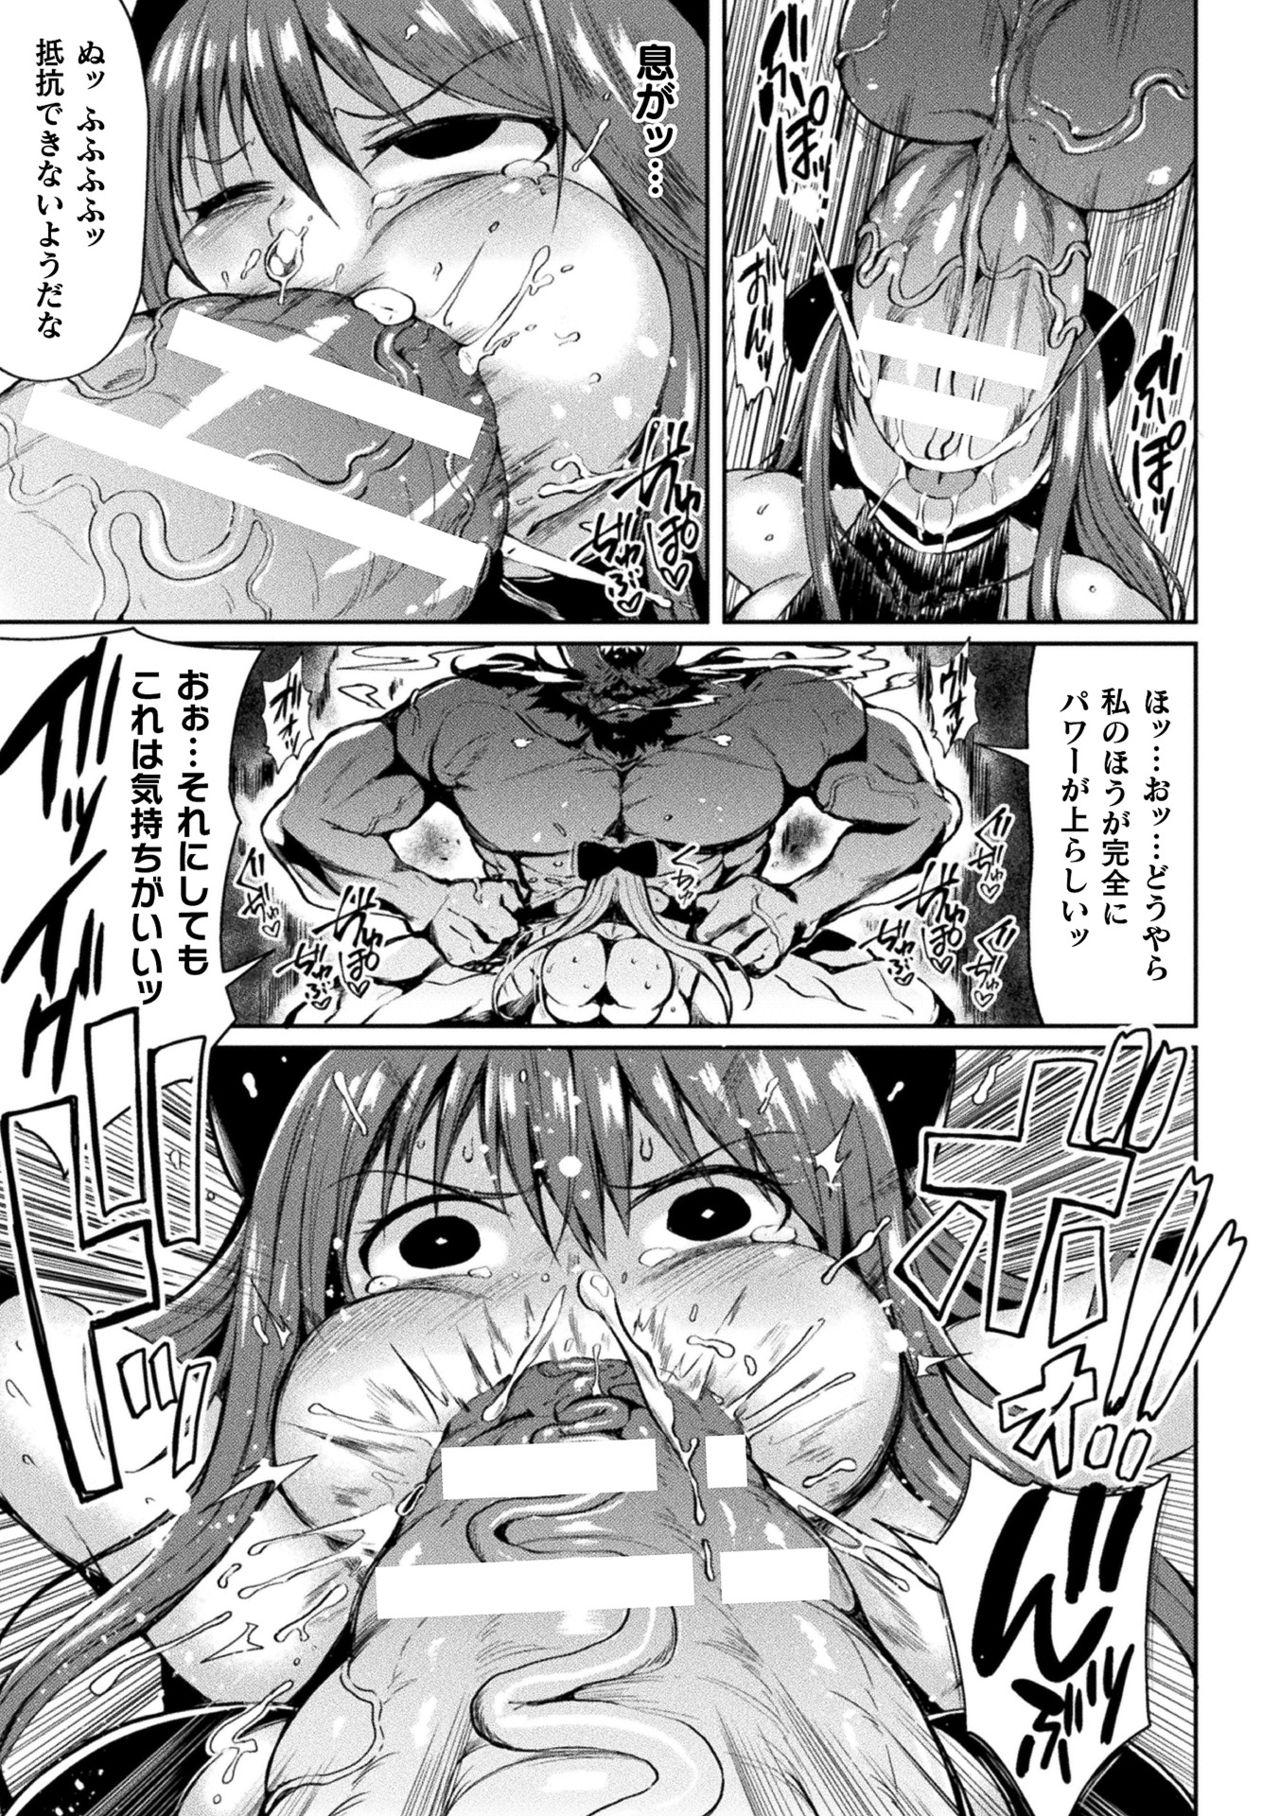 2D Comic Magazine Mesugaki Henshin Heroine Seisai Wakarase-bou ni wa Katemasen deshita! Vol. 2 50